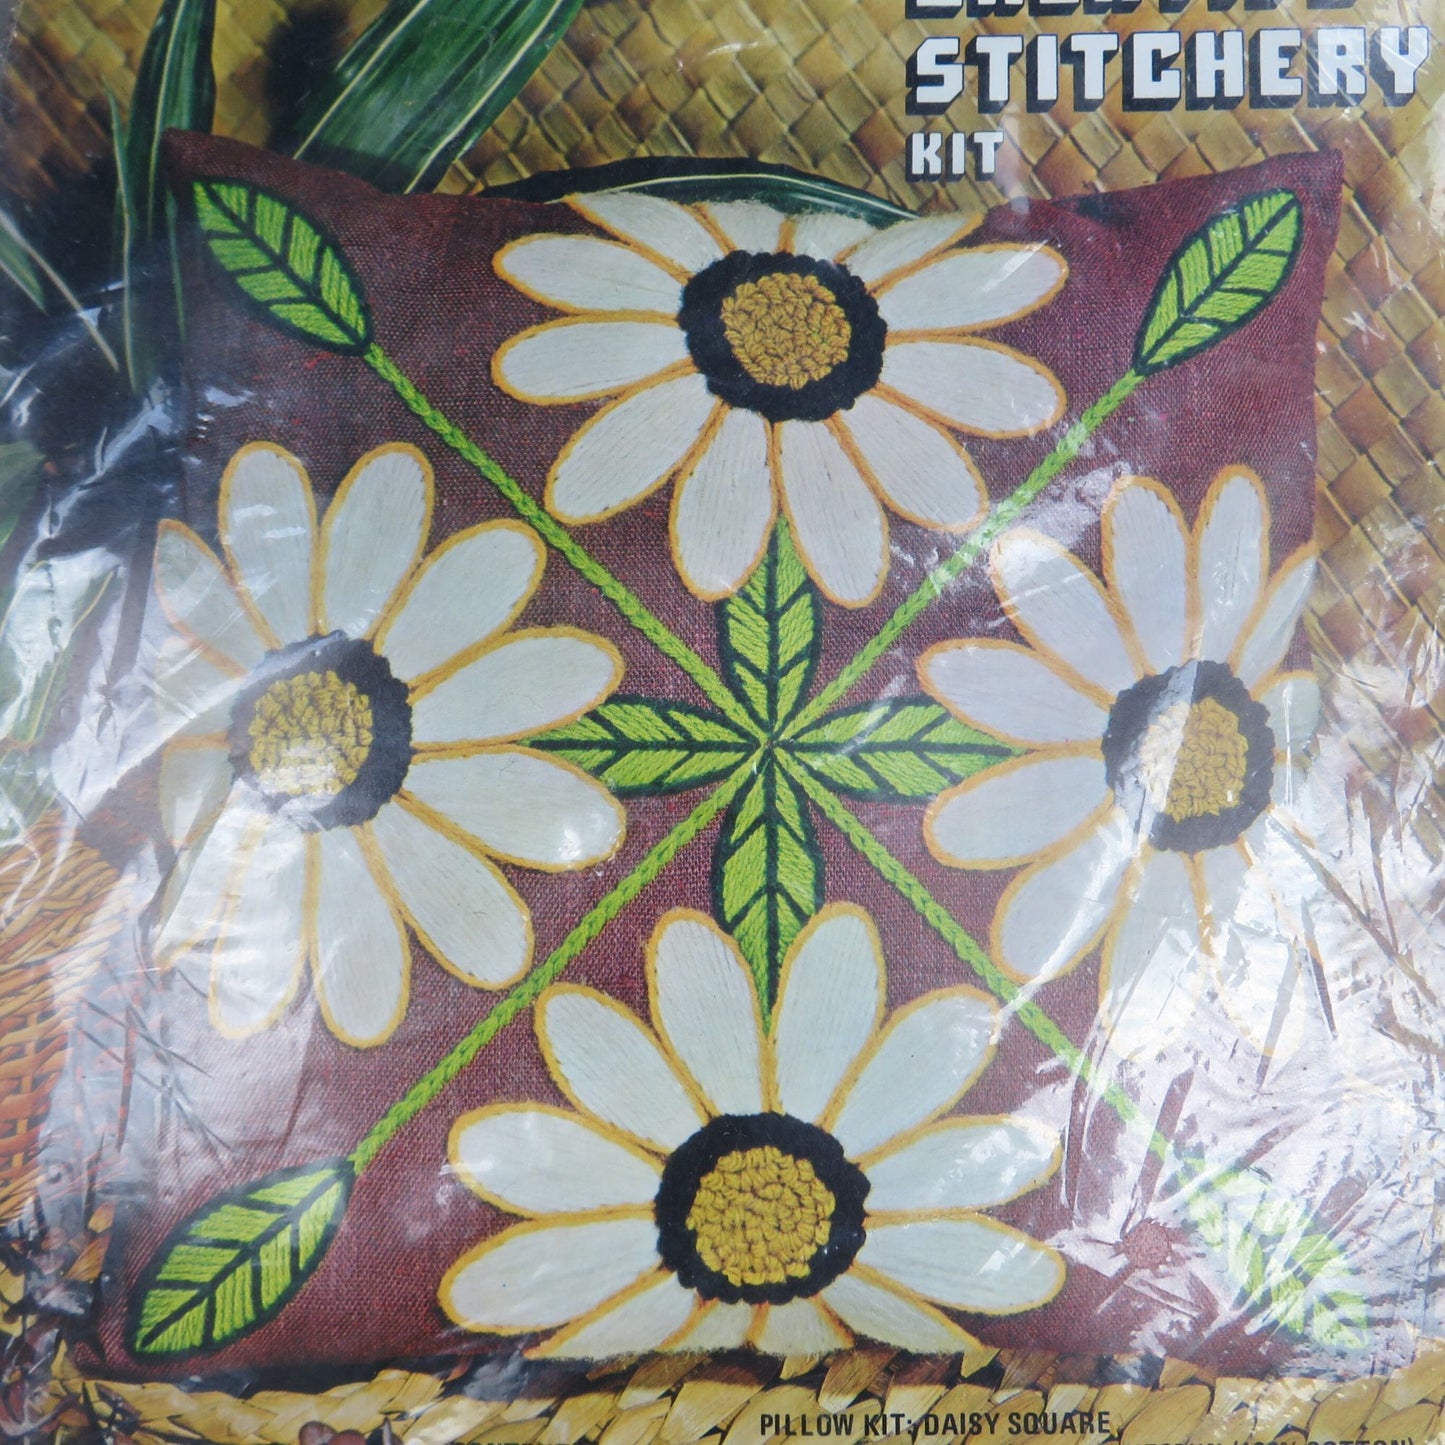 Daisy Crewel Pillow Kit Creative Stitchery Flower Homespun Vogart Crafts 2147